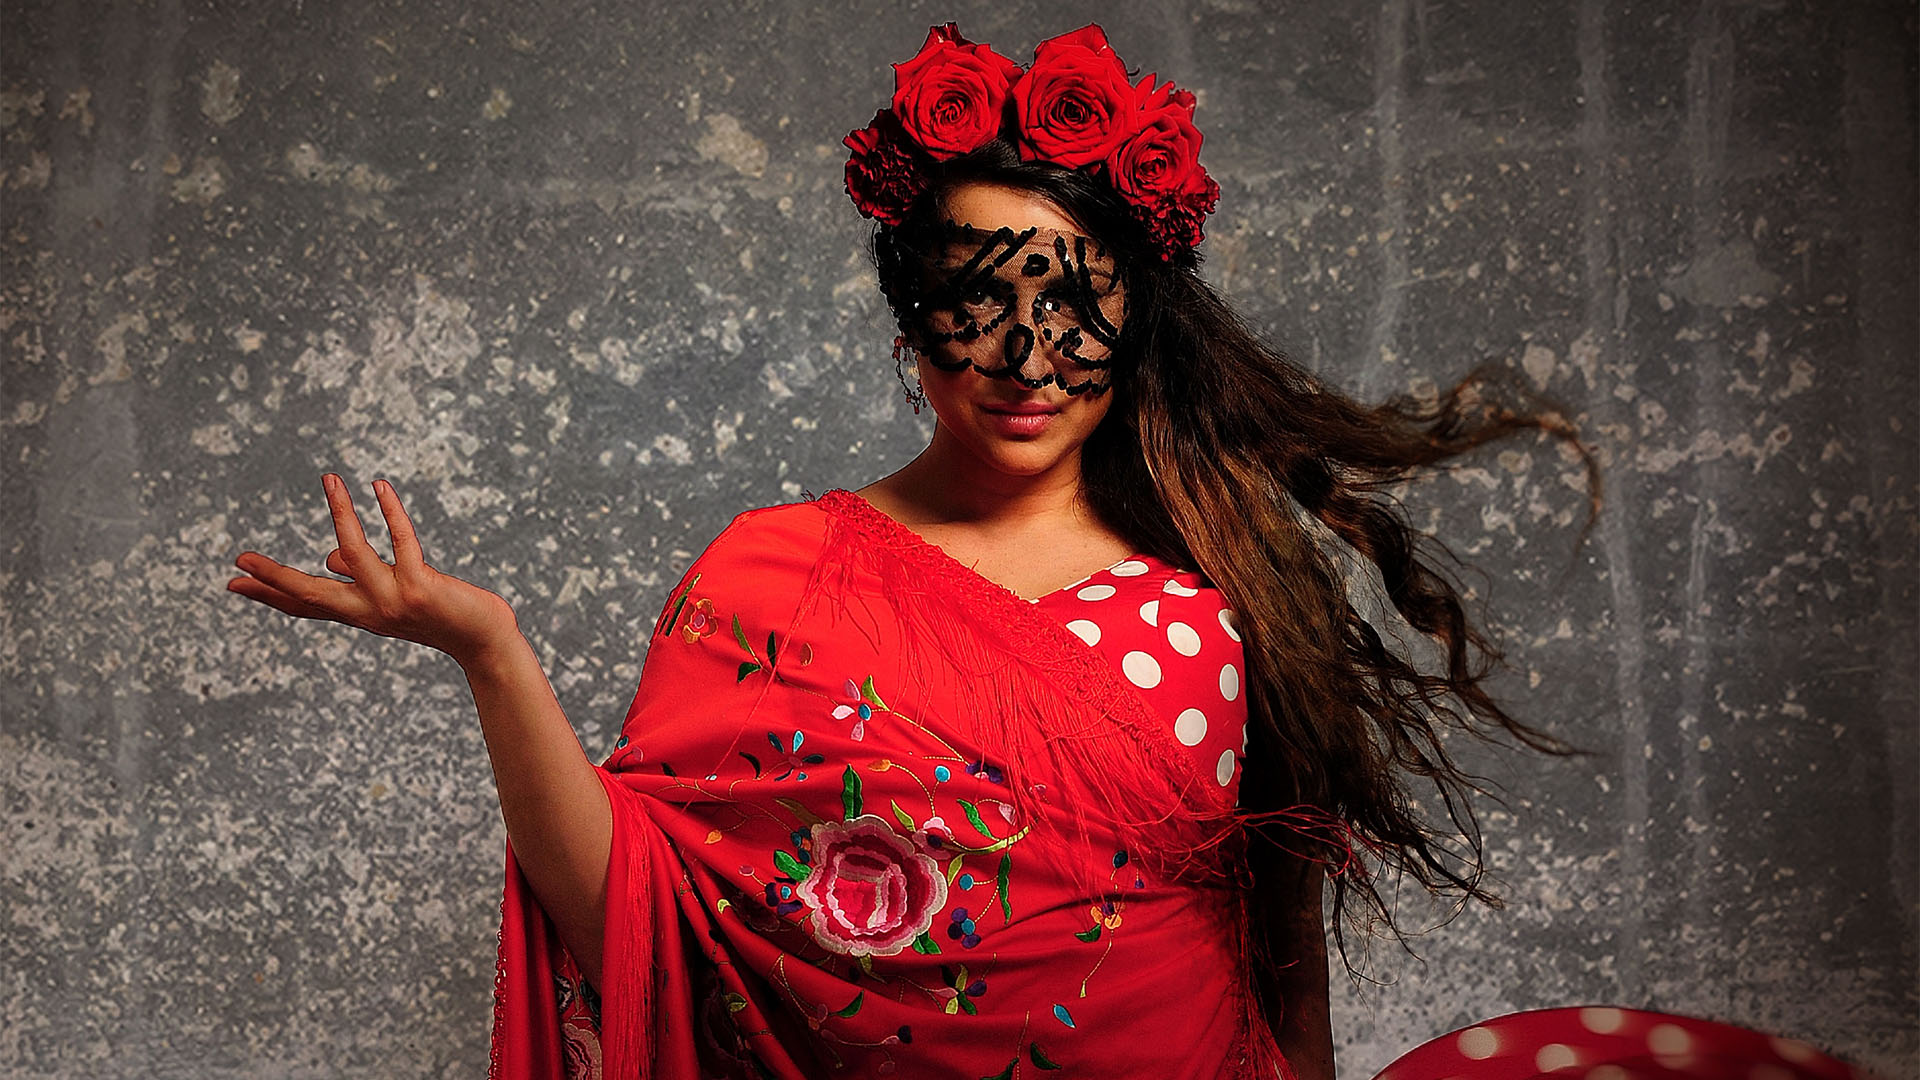 Kvinna i röd klänning med röda blommor i håret och svart spets framför ögonen. Hon håller handen i en danslik rörelse.